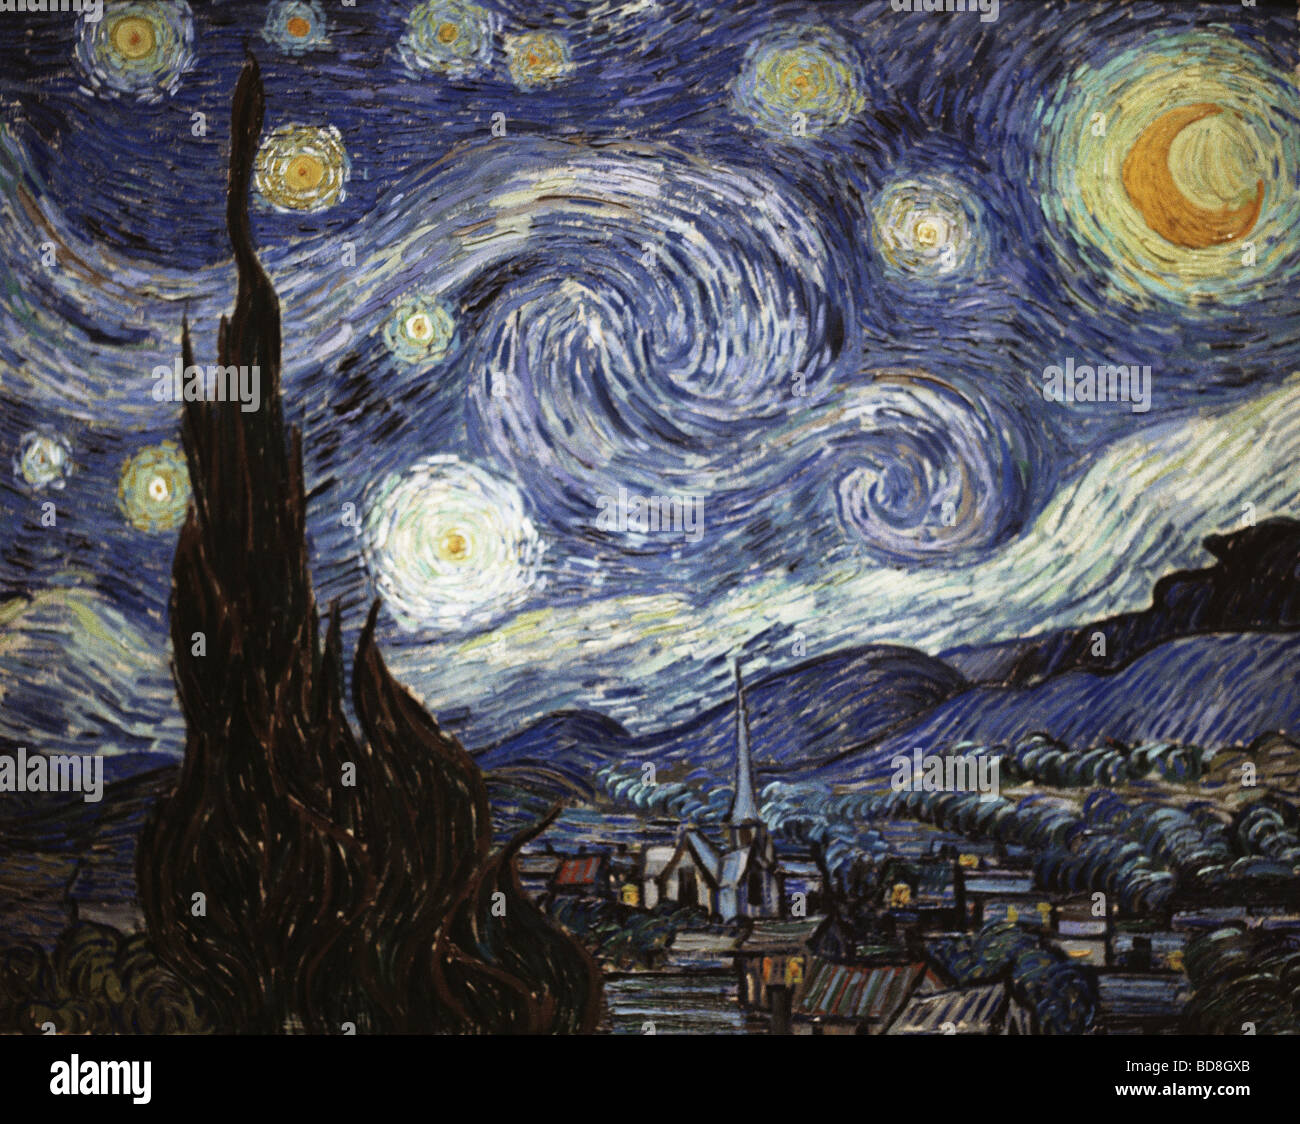 Bellas artes, Vincent van Gogh, (1853 - 1890), pintura, 'La noche estrellada', óleo sobre lienzo, 73 x 92 cm, 1889, Galería Nacional de Arte, Washington, D.C., el Copyright del artista no ha de ser borrado Foto de stock